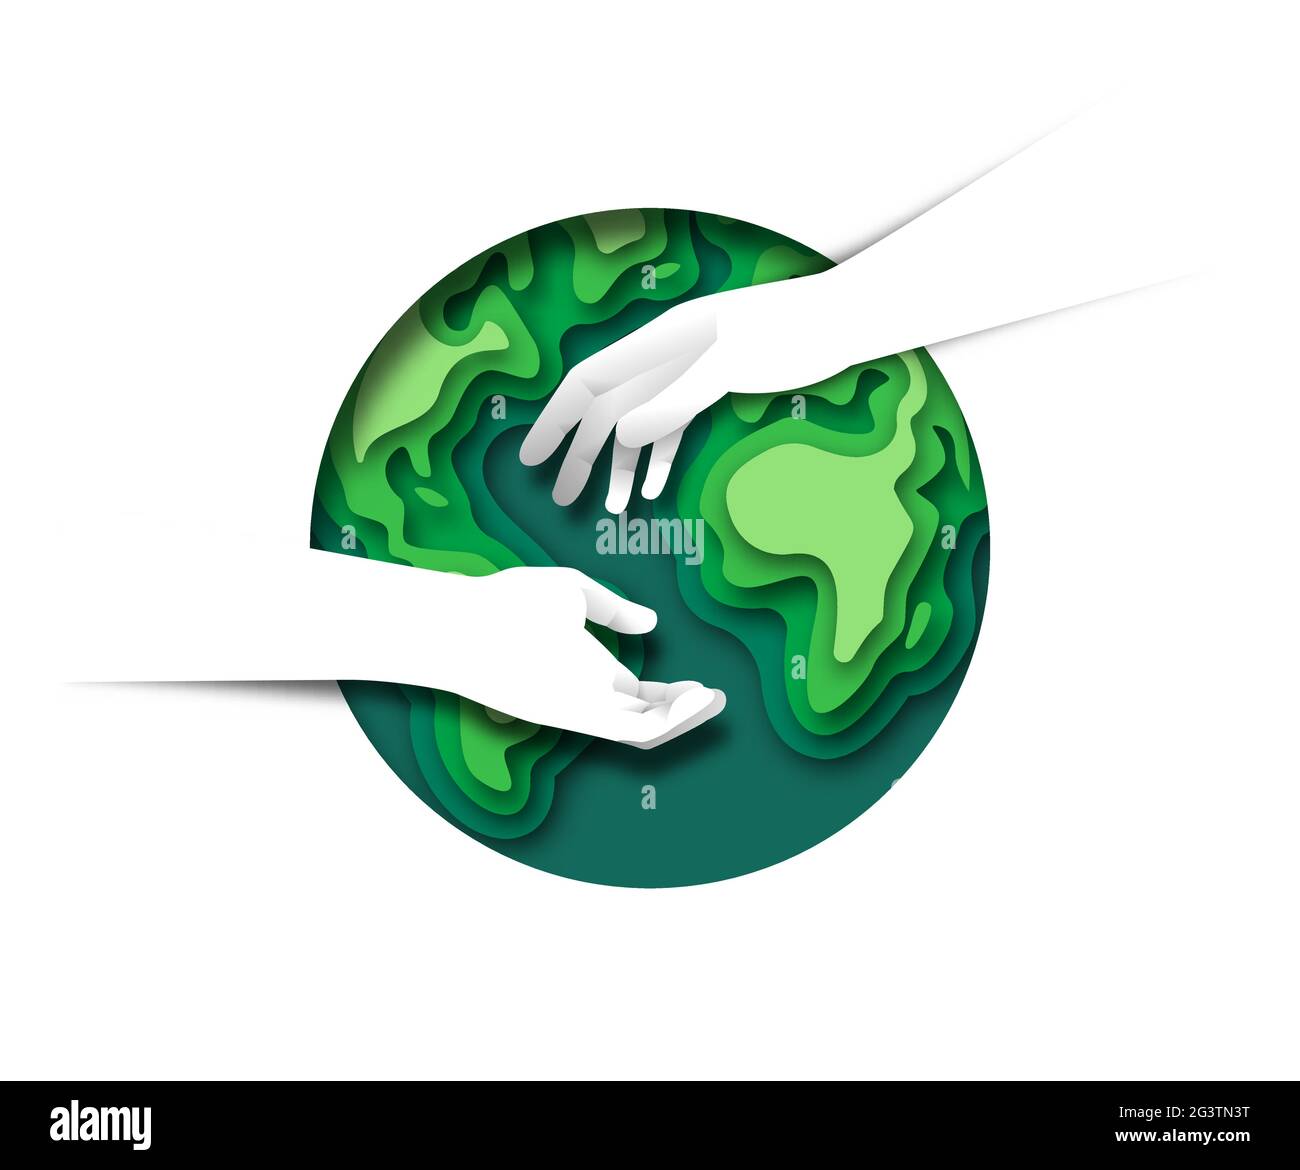 Deux mains humaines s'unissent pour aider avec le papier 3d coupé planète Terre verte cercle sur fond blanc isolé. Concept de protection de l'environnement, nat Illustration de Vecteur